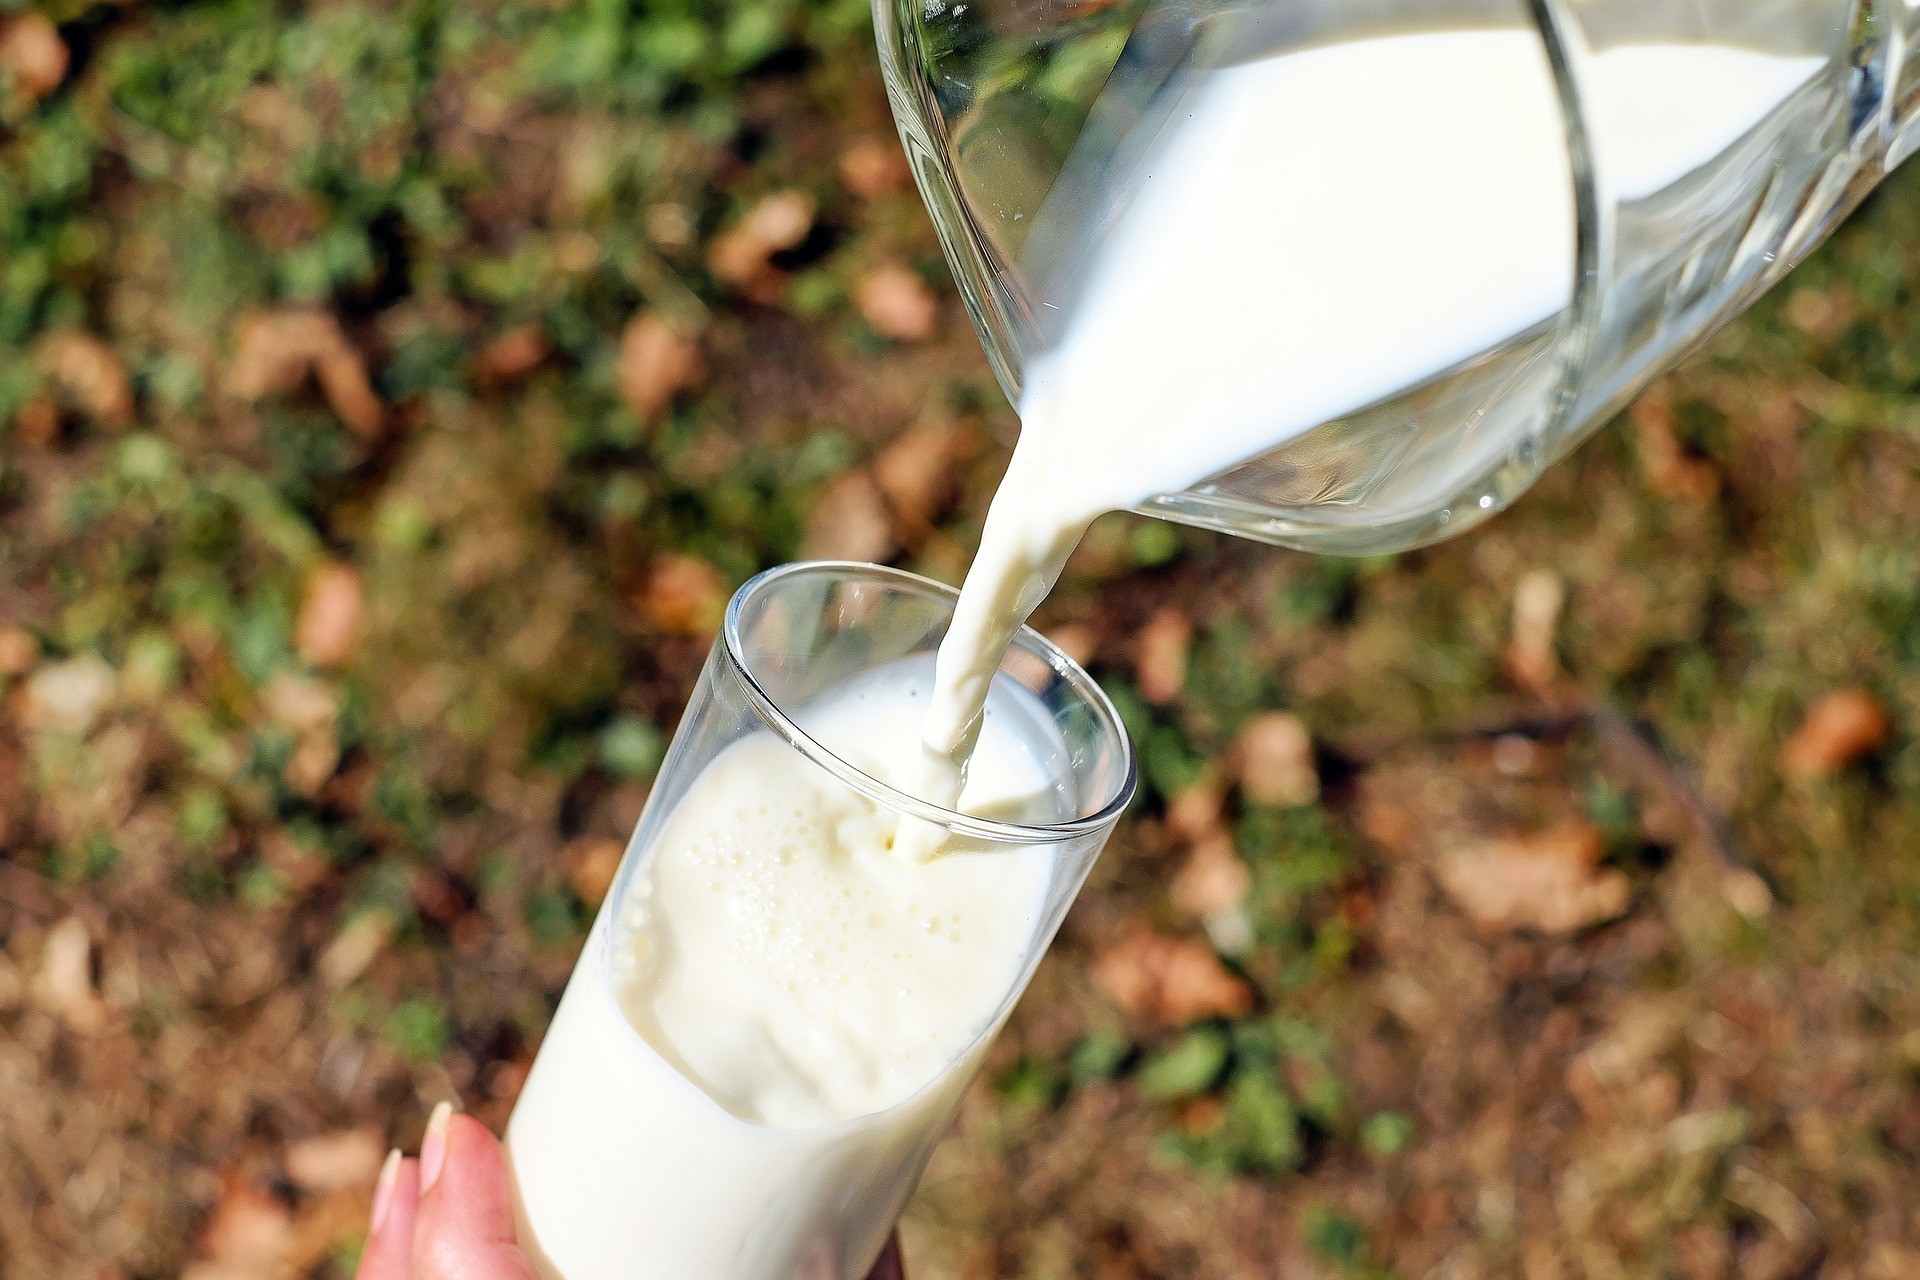 Отличный способ сэкономить: молочная кухня 2019